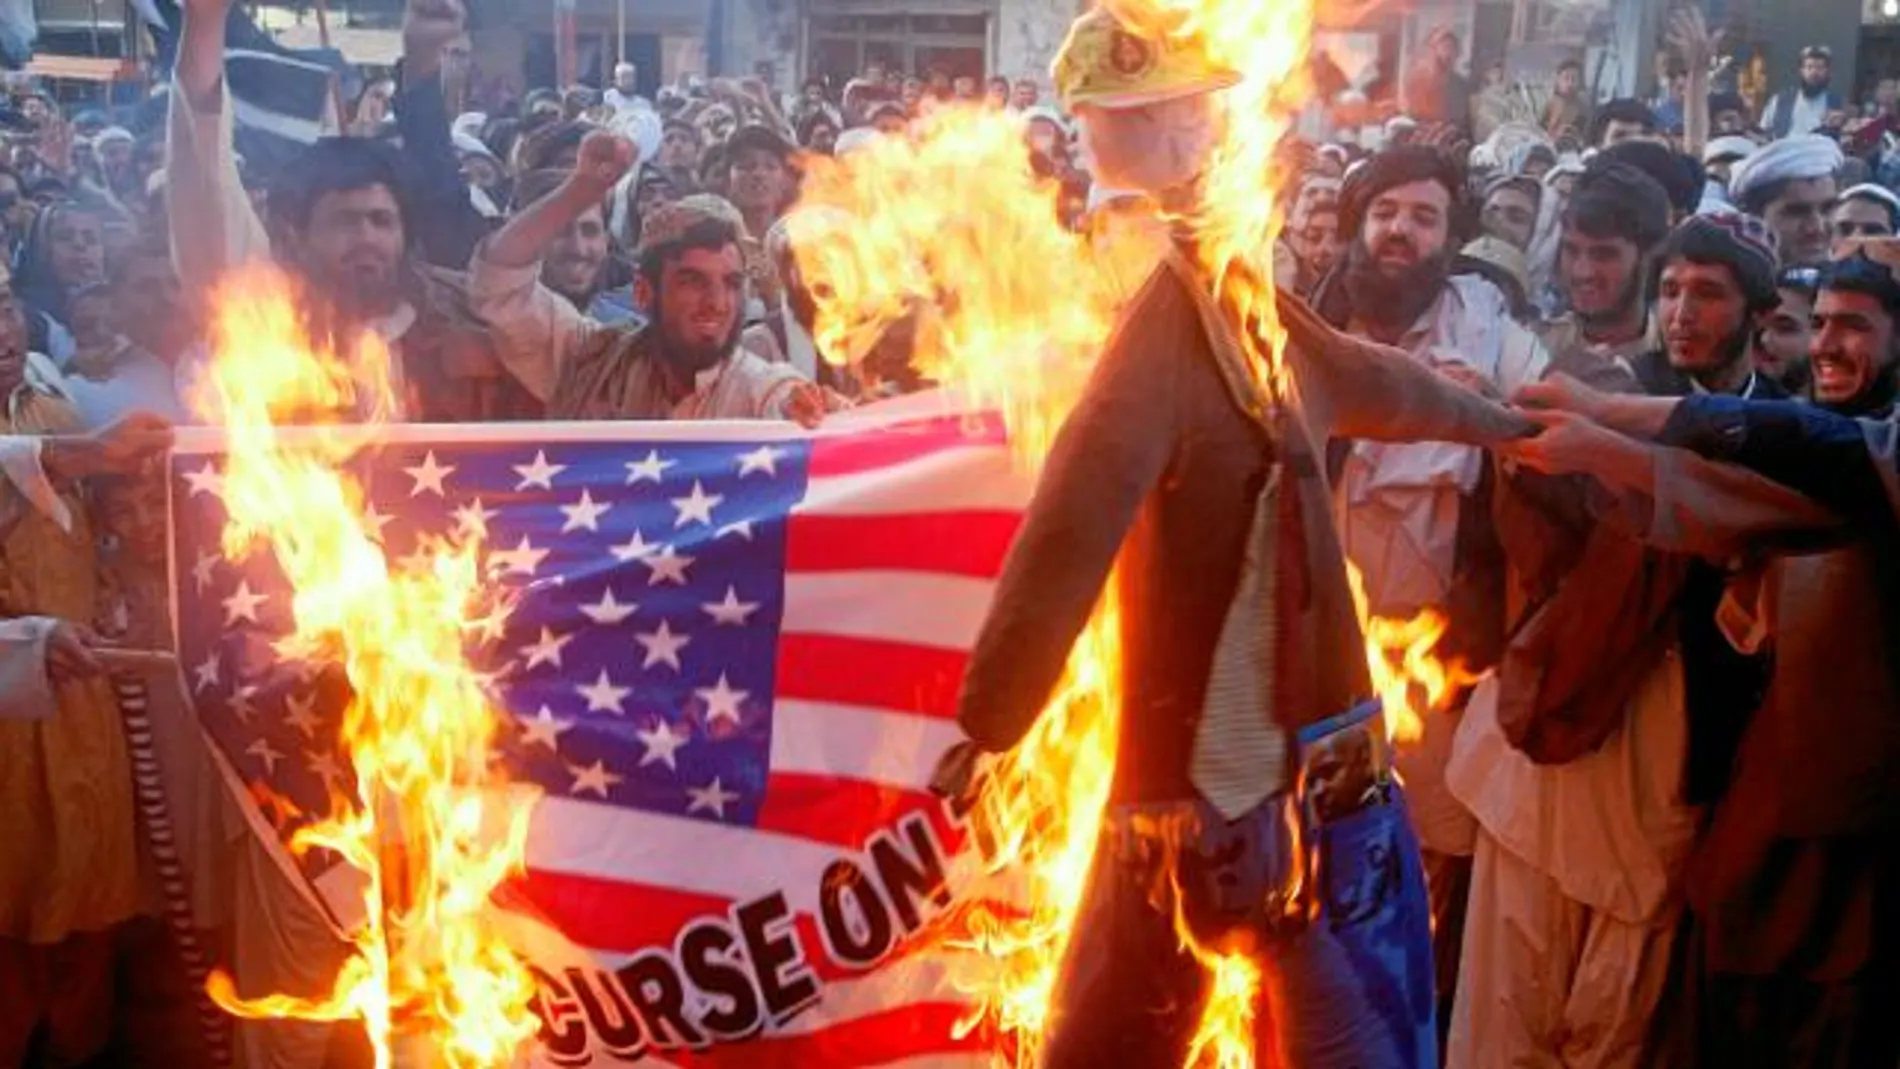 Ayer quemaron banderas y efigies del presidente de EE UU